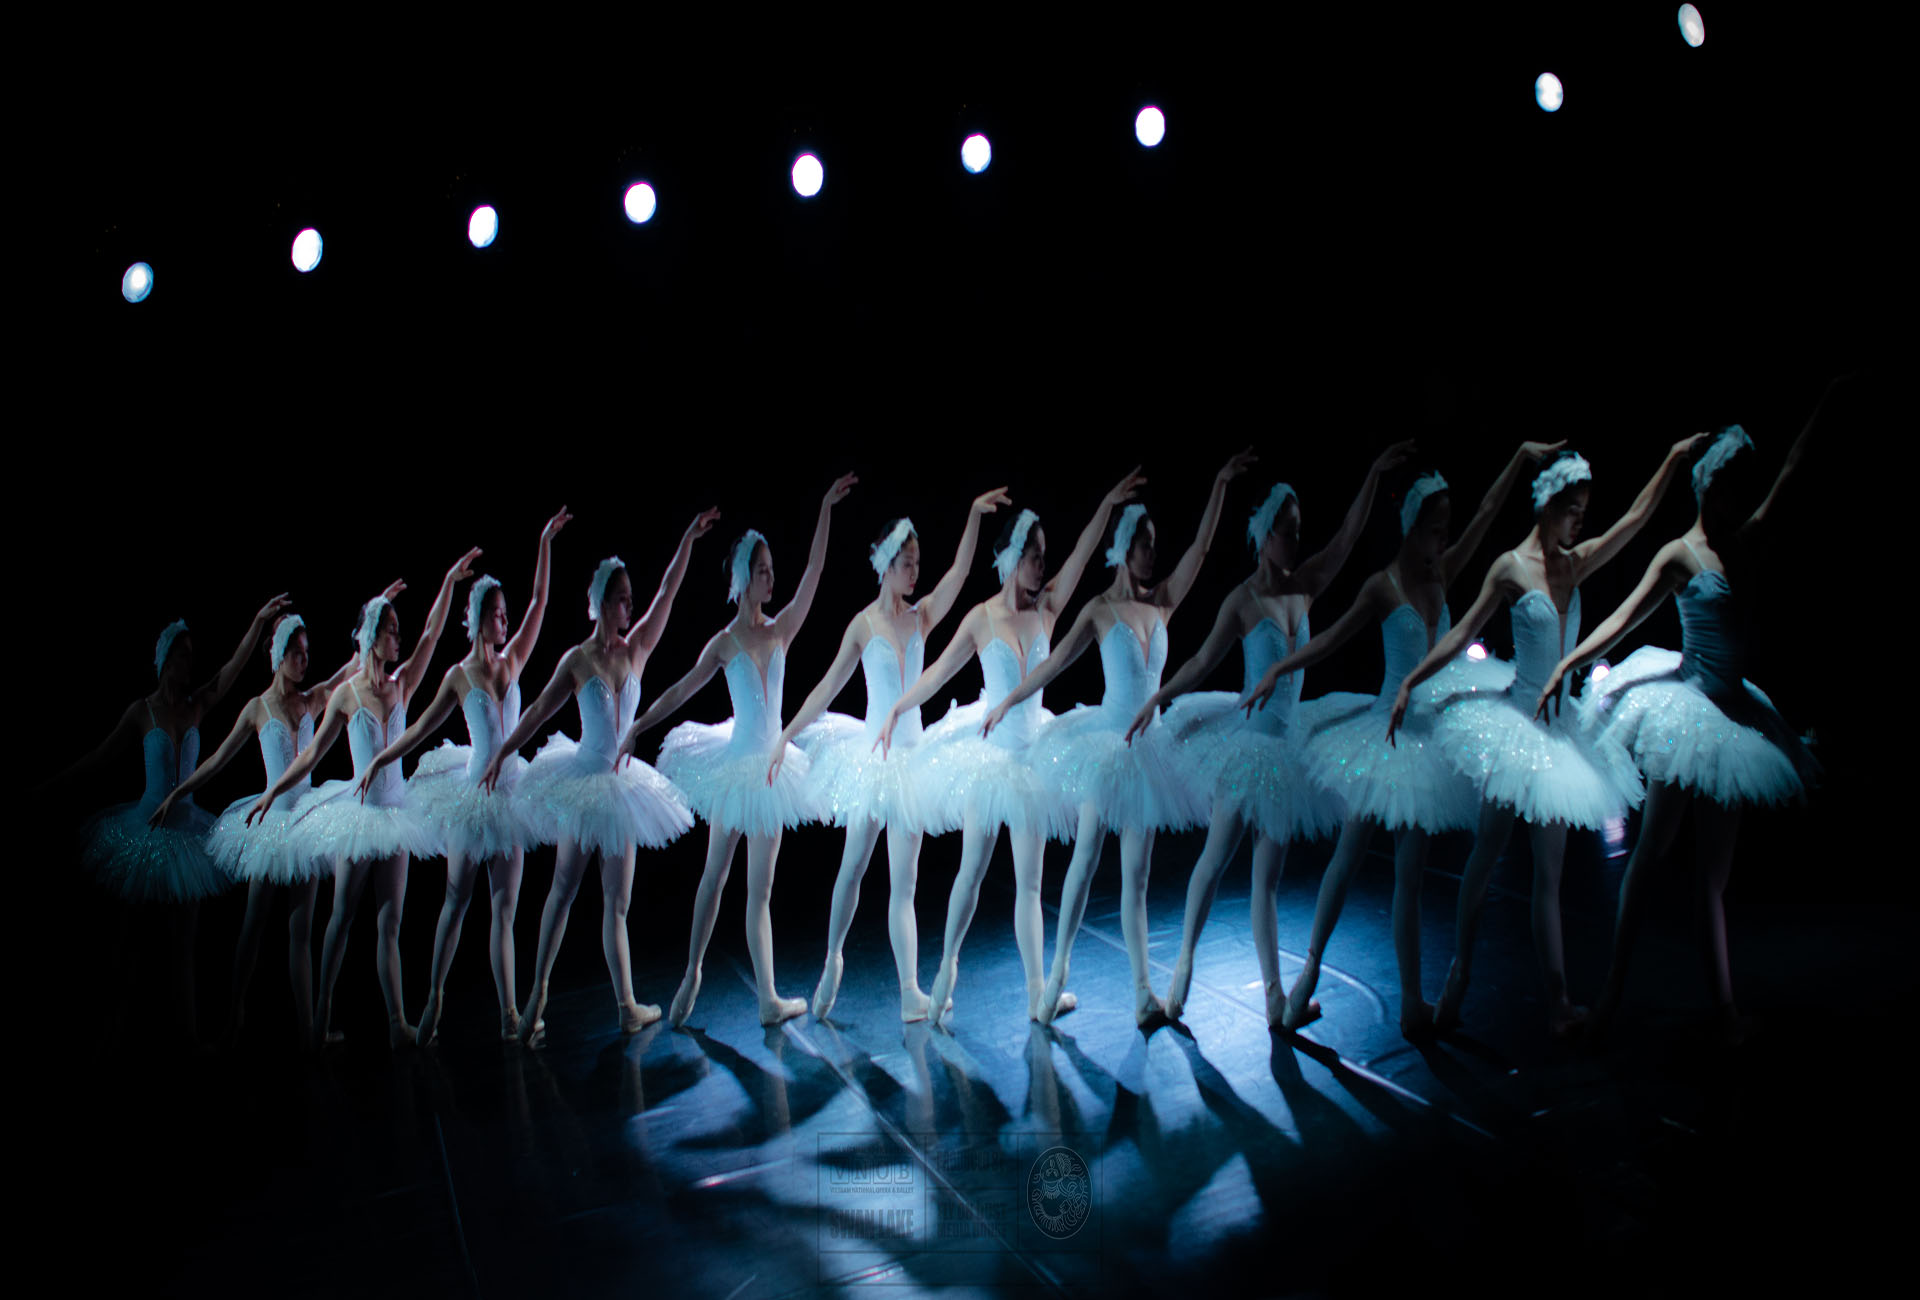 Vietnam National Opera & Ballet